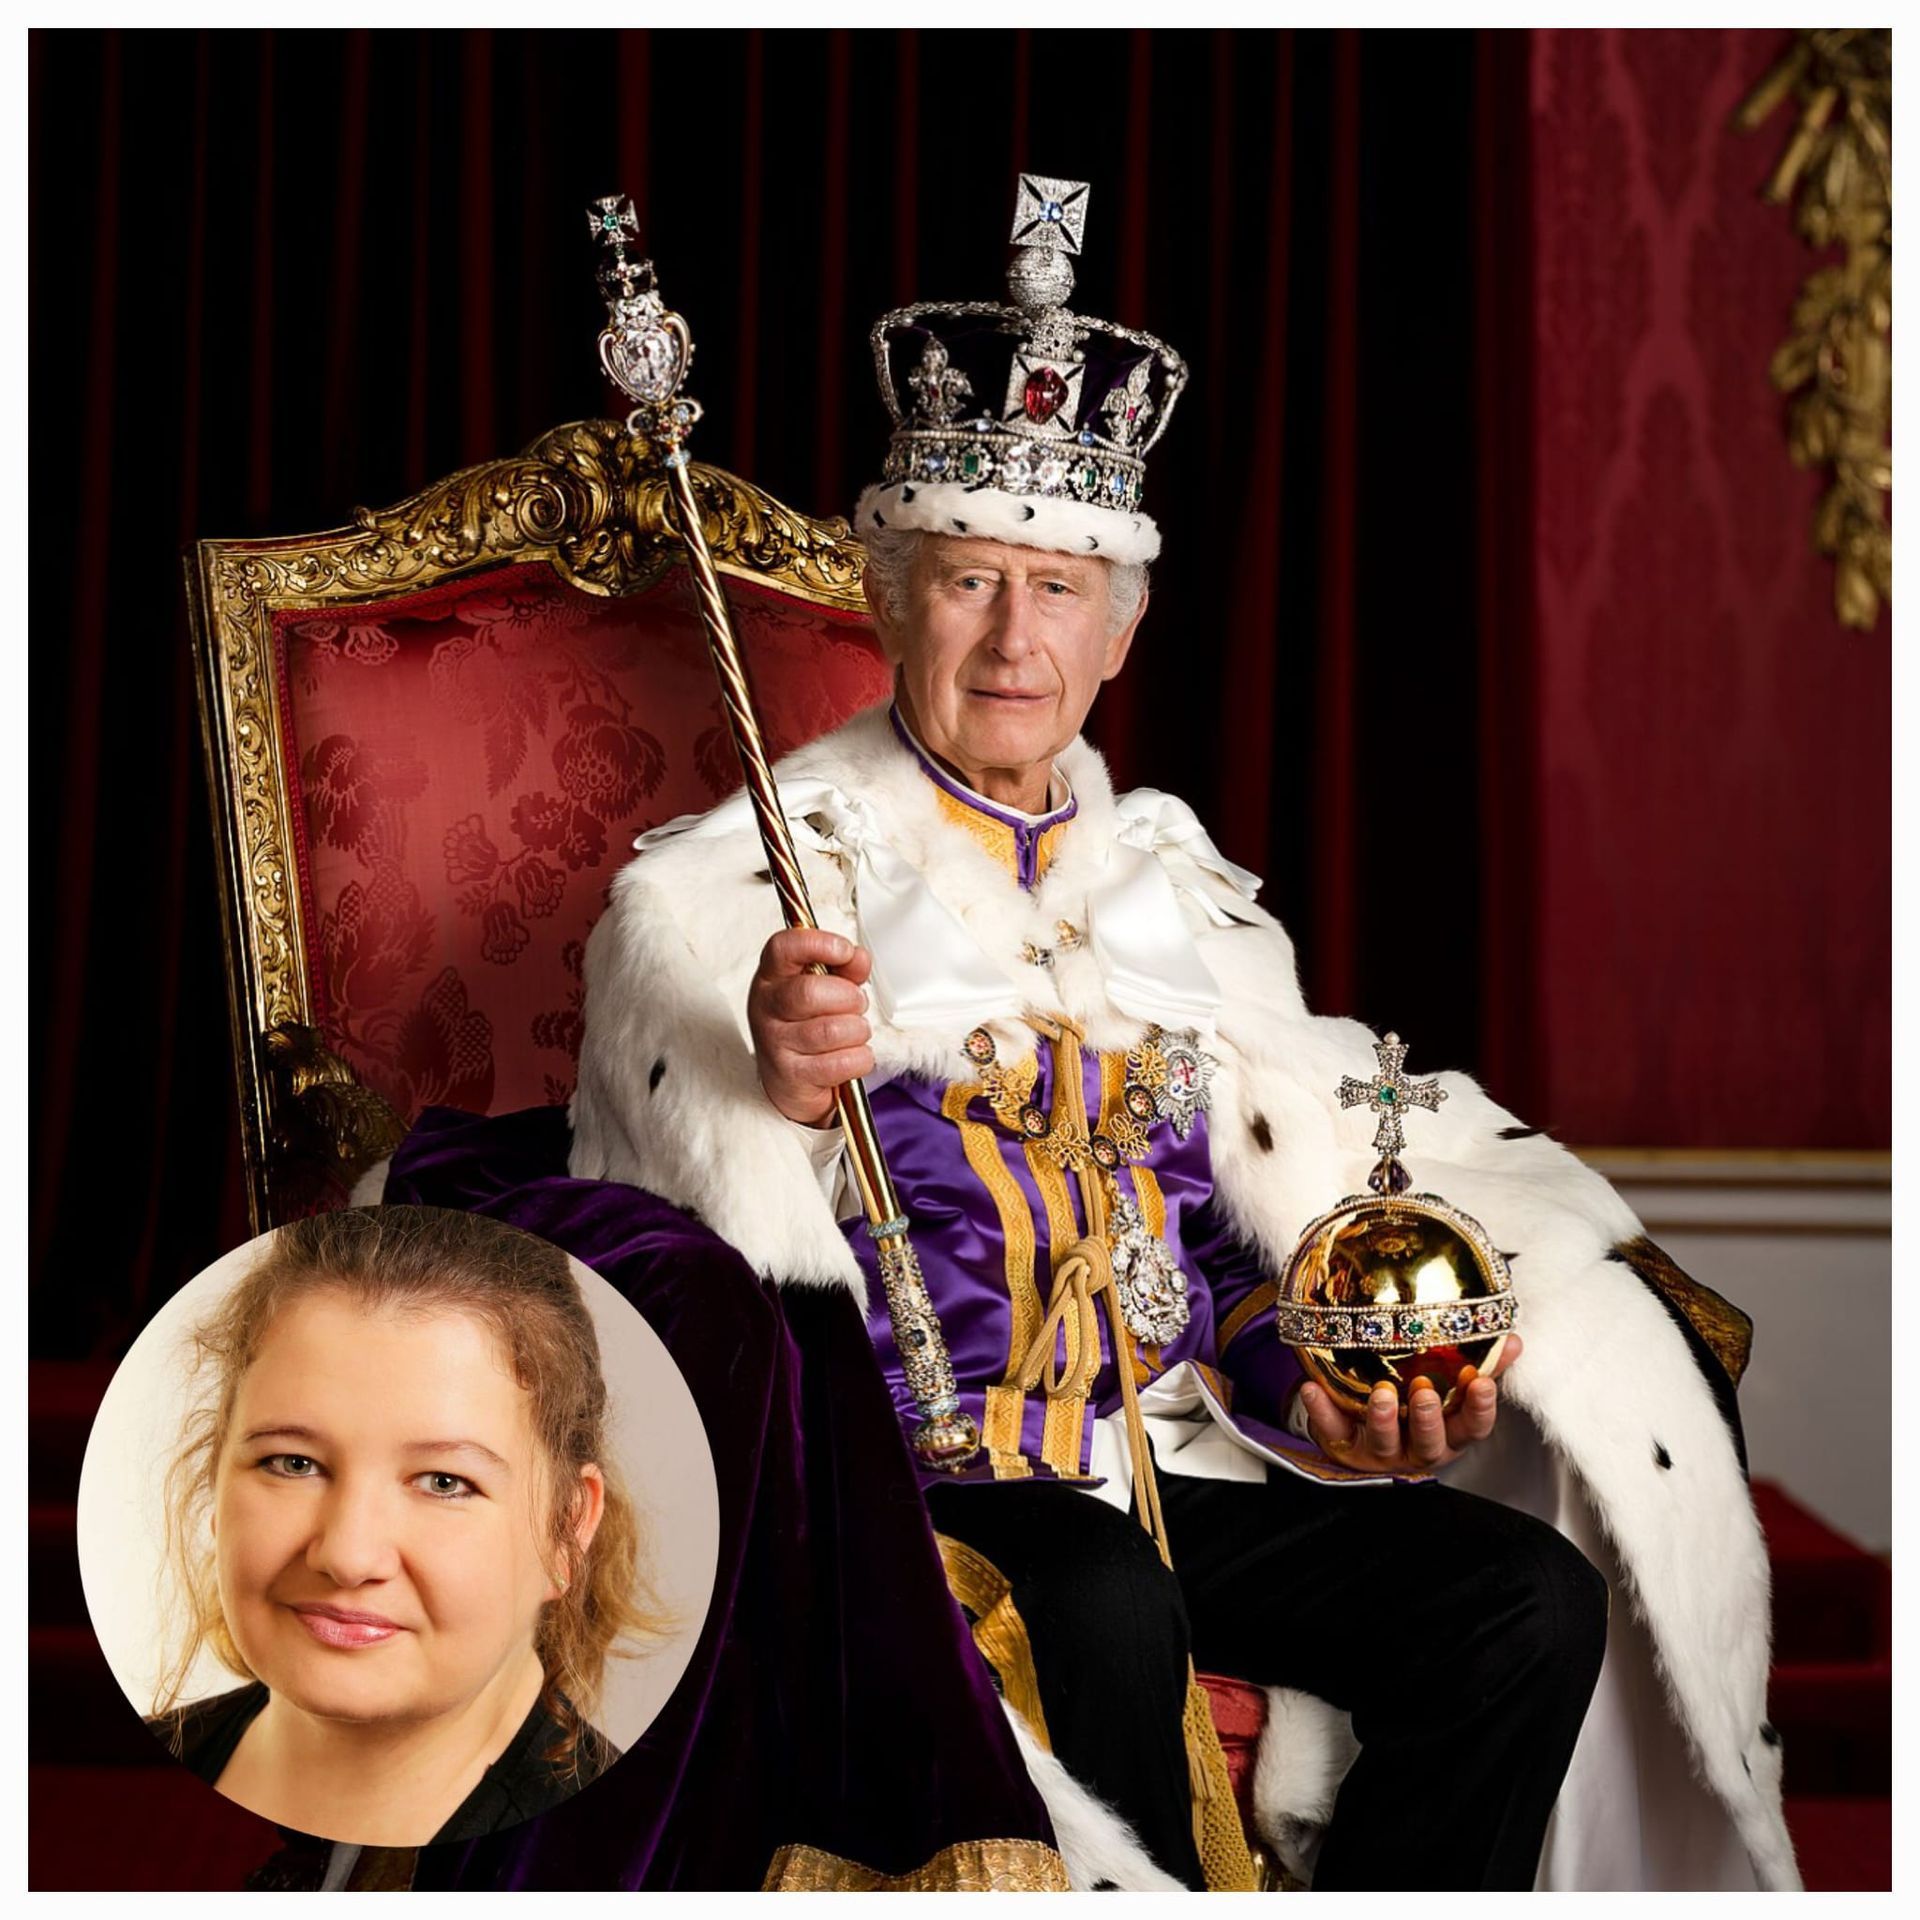 Krönungswochenende von König Charles III. Kommentar von Lisa-Marie Rosenberg